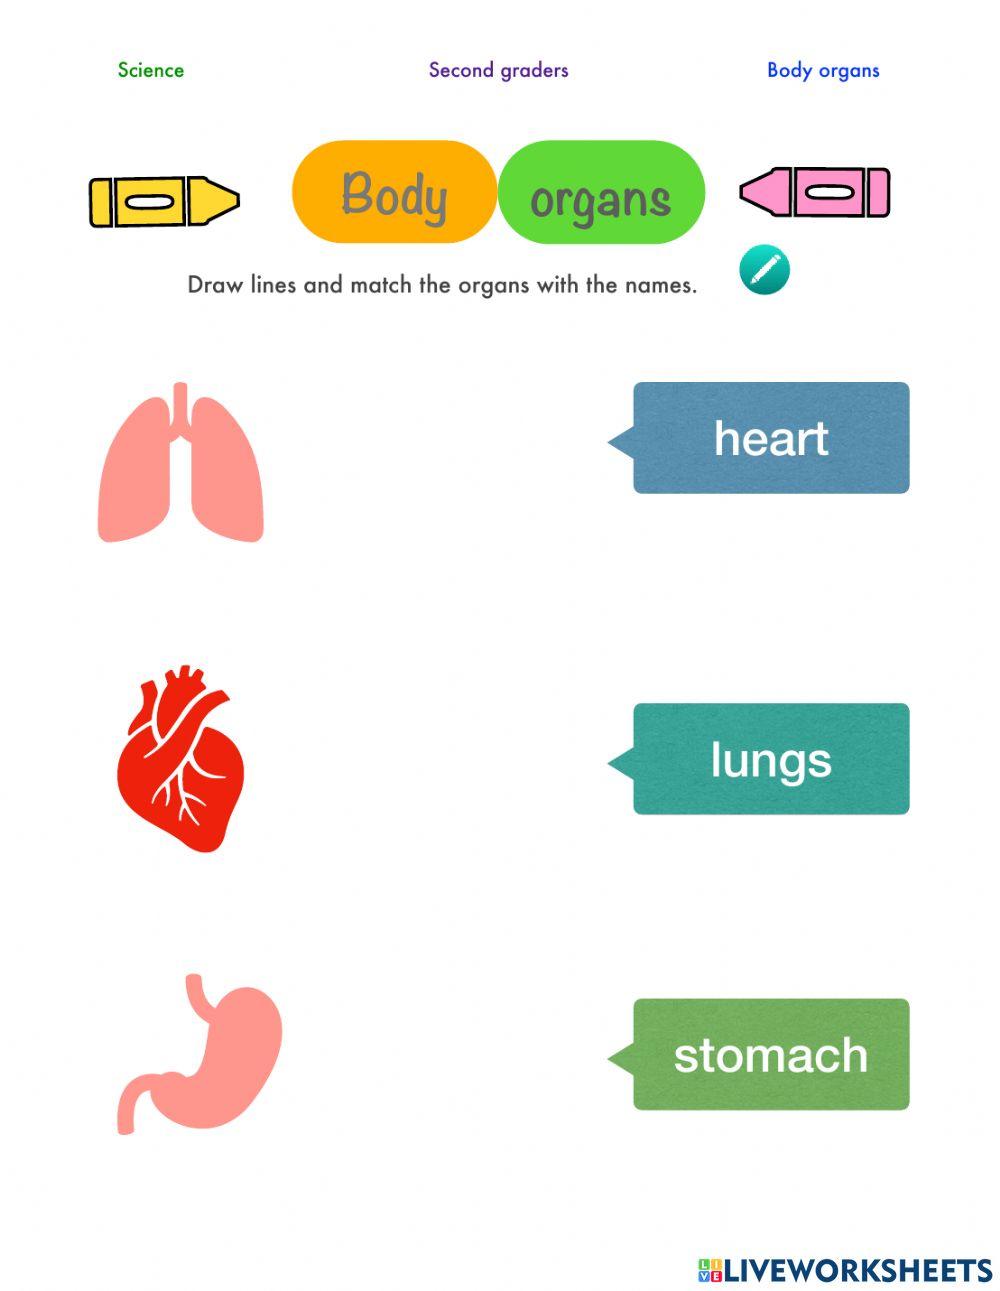 Body organs